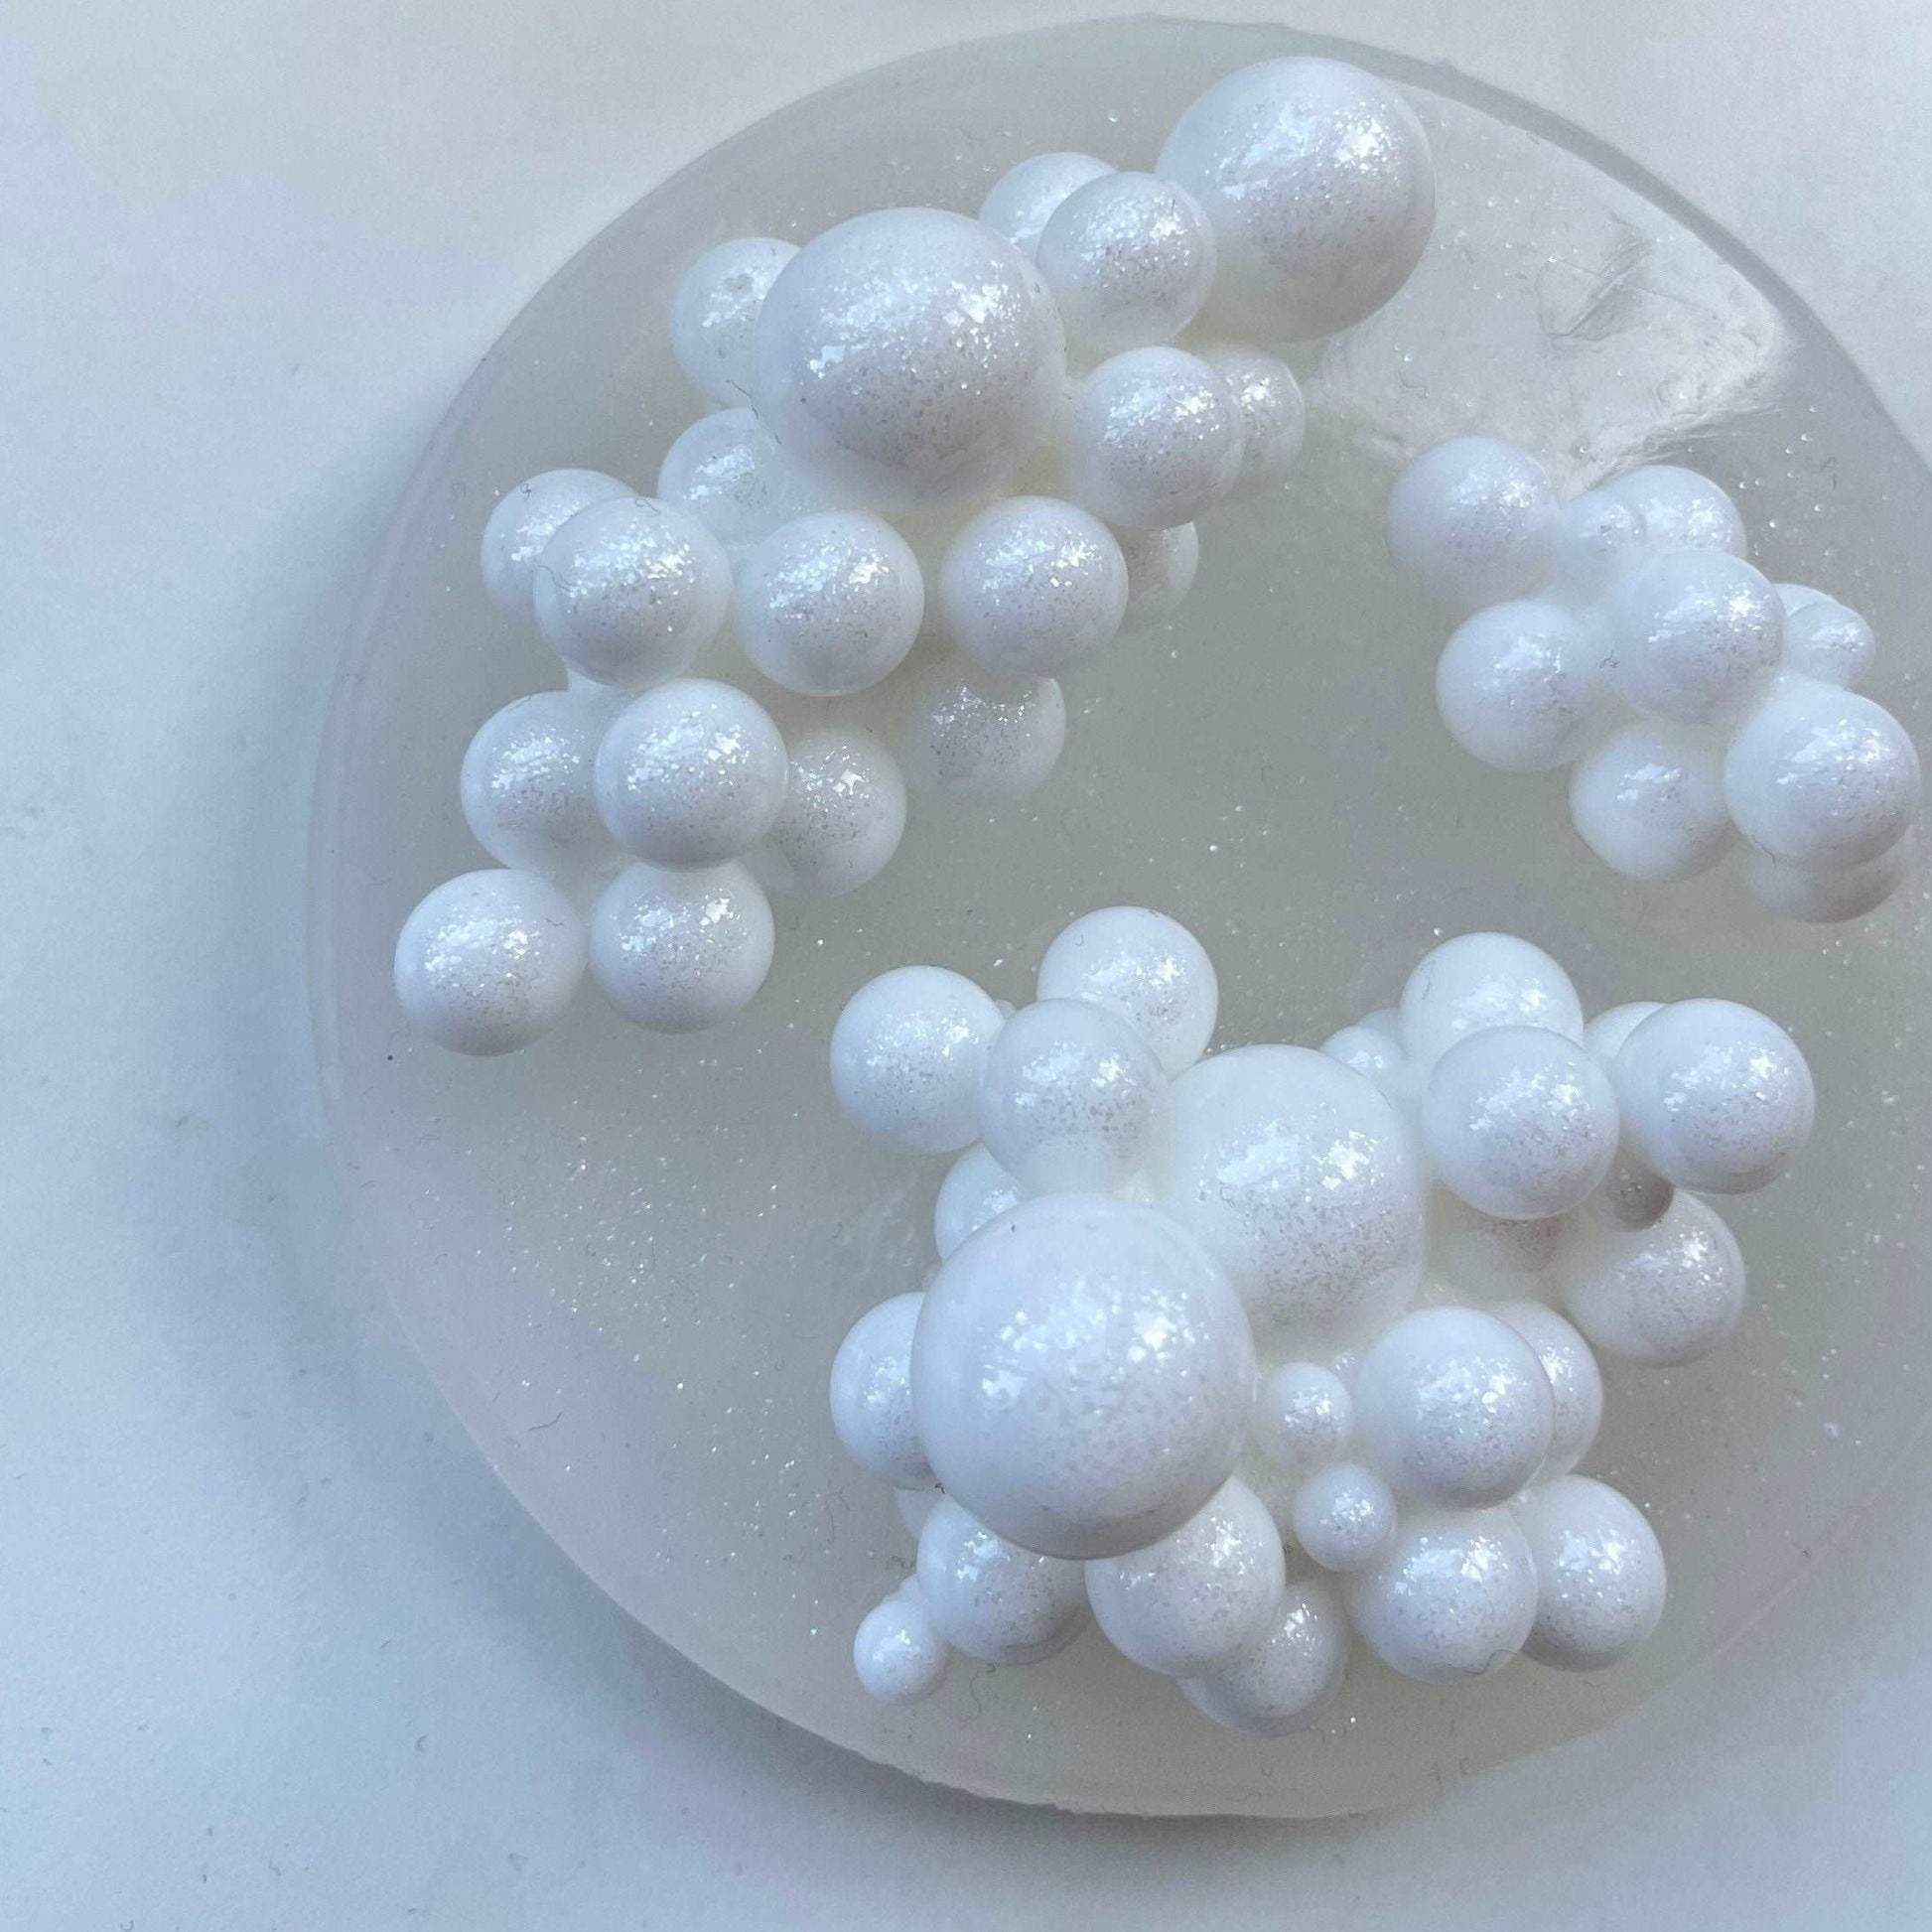 3 Set Unique Medium Bubbles Silicone mold. Abstract epoxy mold bubble mould silicone resin art bubble stone molding